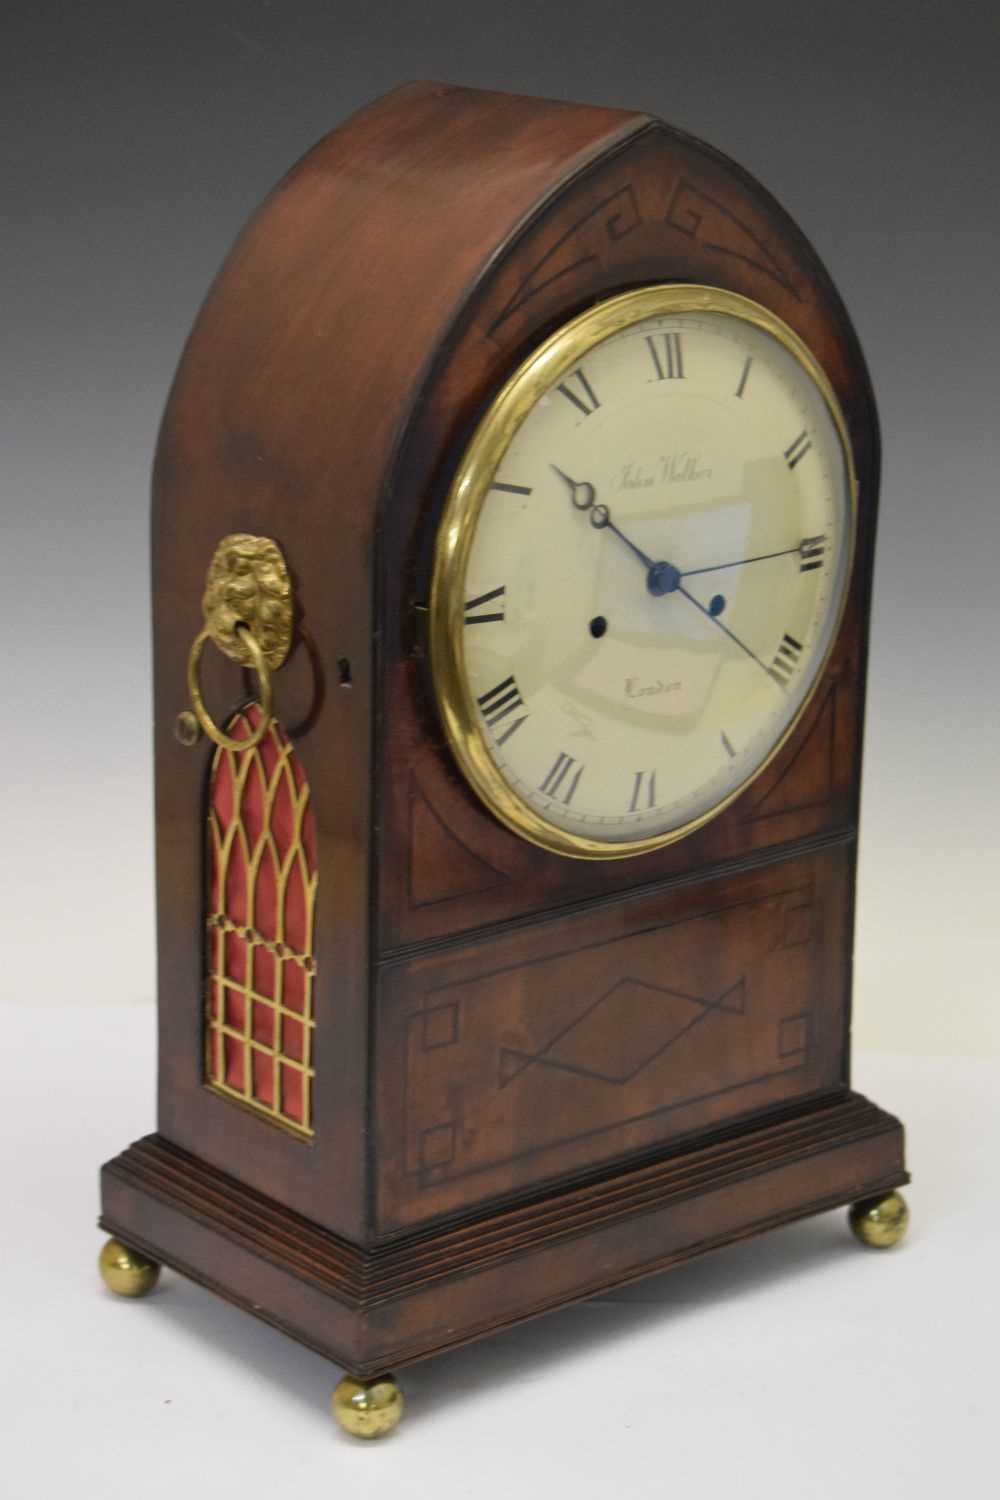 Bracket clock, John Walker, London